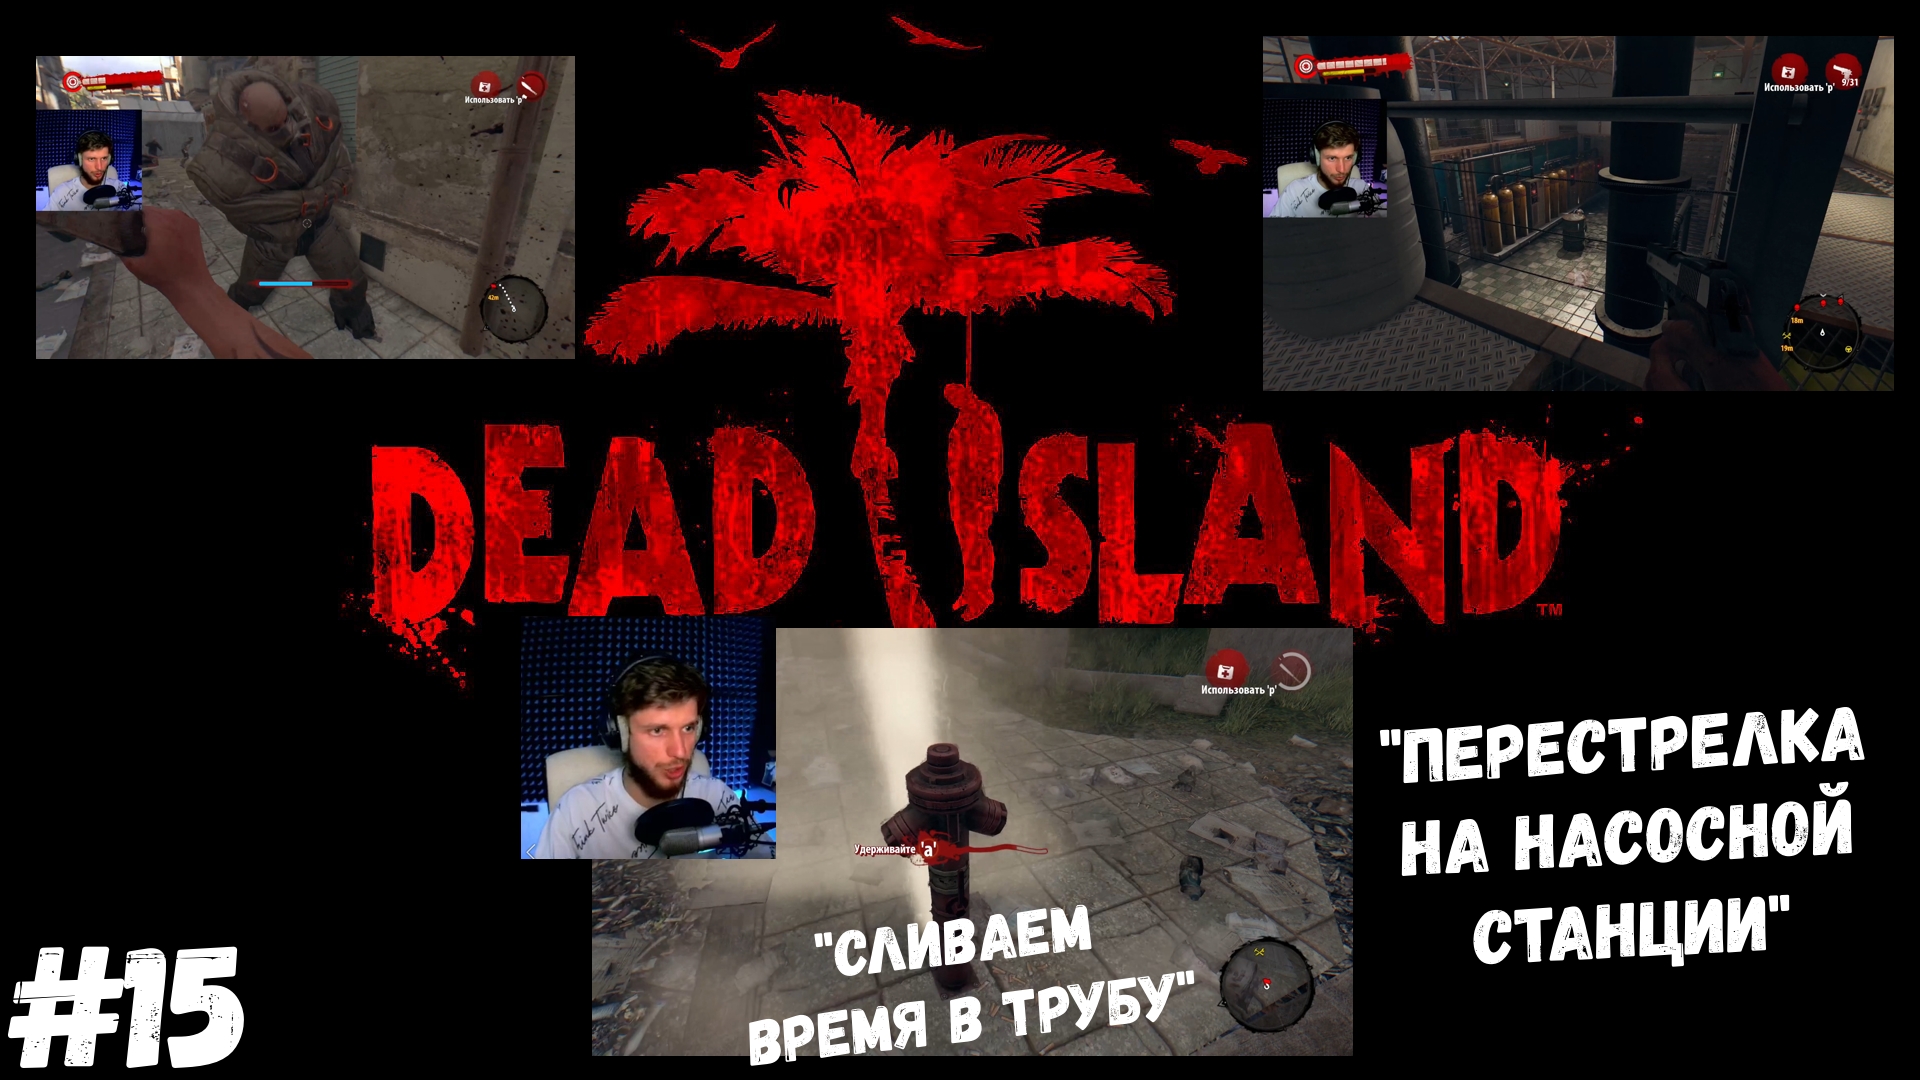 #15. Dead island Definitive Edition. "ПЕРЕСТРЕЛКА НА НАСОСНОЙ СТАНЦИИ"